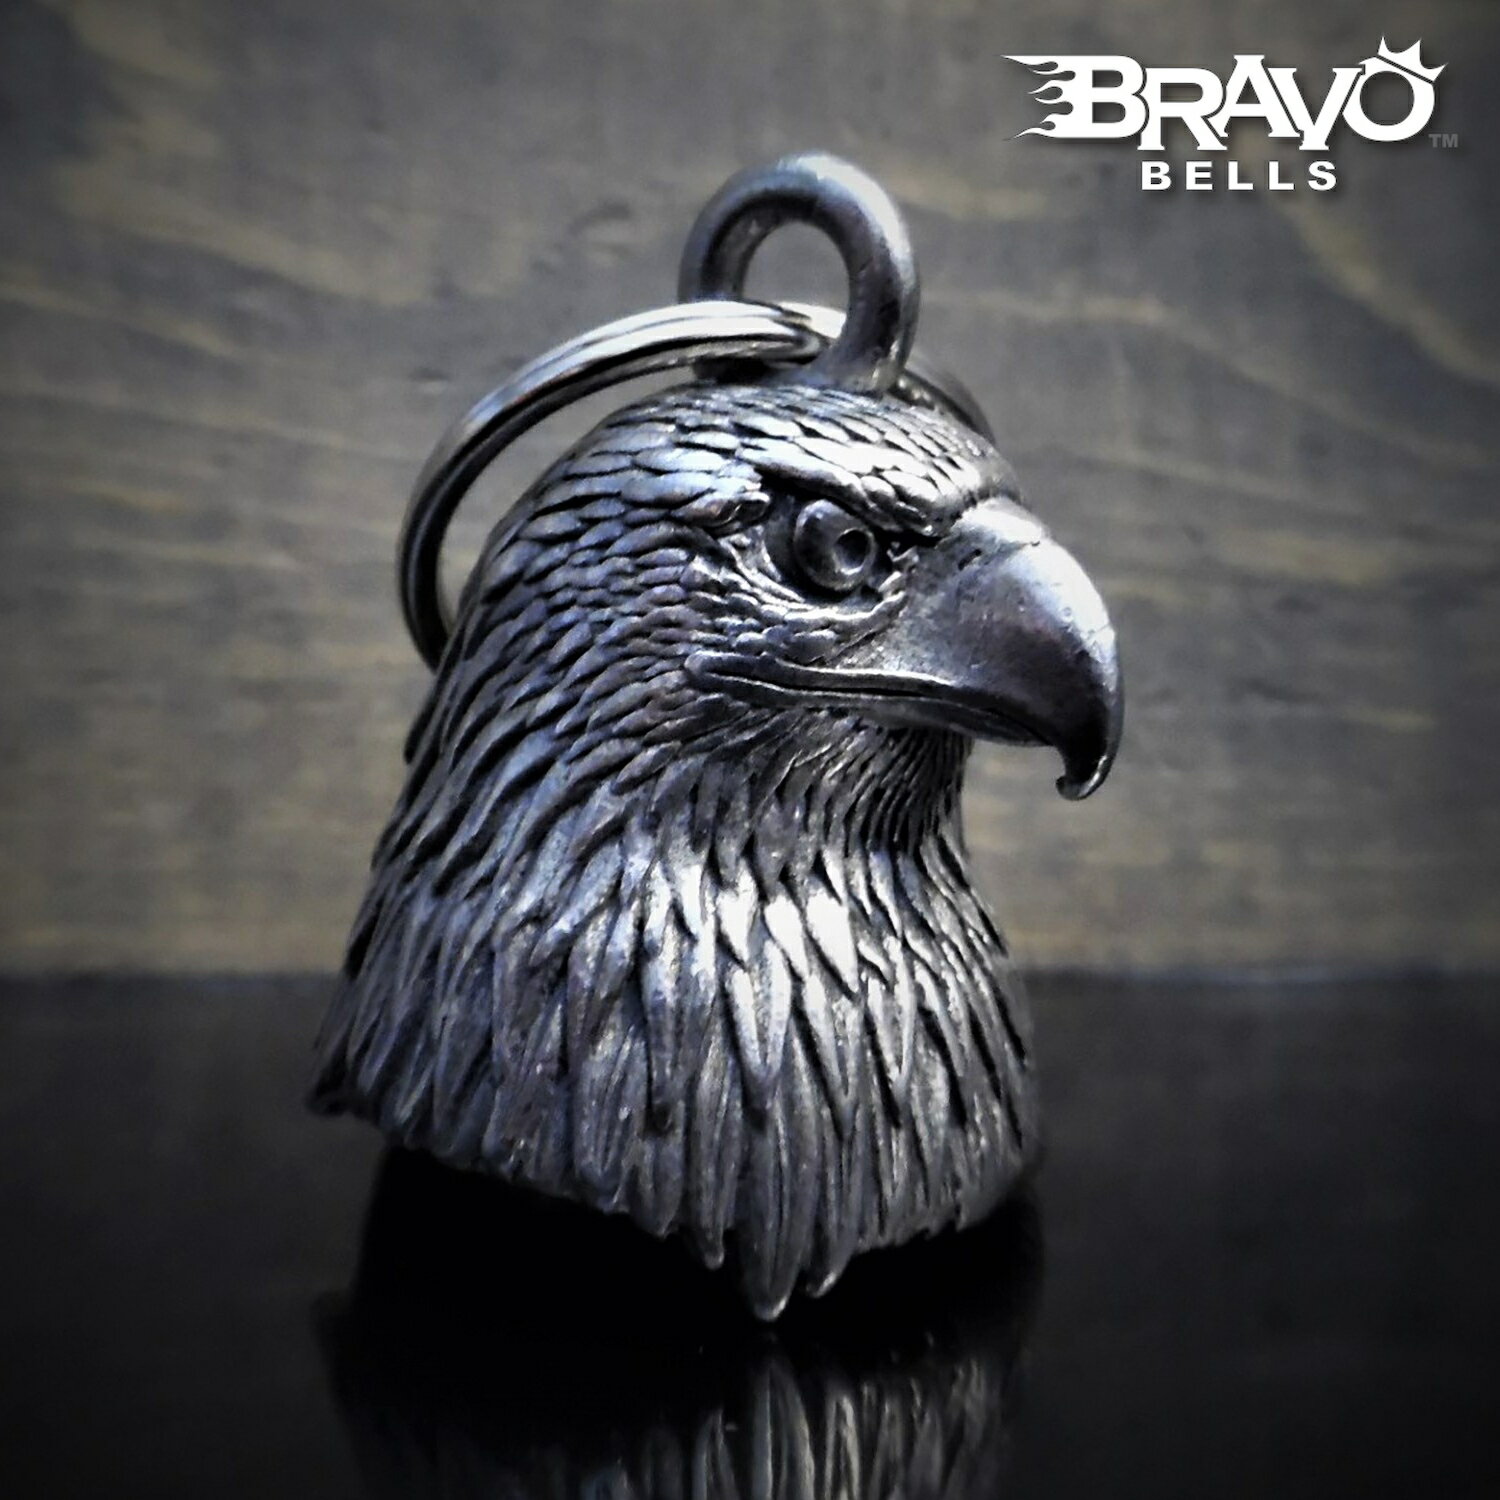 米国製 Bravo Bells 鷲 3D ベル [Eagle Head] ブラボーベル Made In USA 魔除け お守りとしてバイカーへの特別なギフトに! バイク オートバイ 鈴 アクセサリー キーホルダー キーチェーン ガーディアンベル Guardian Bell